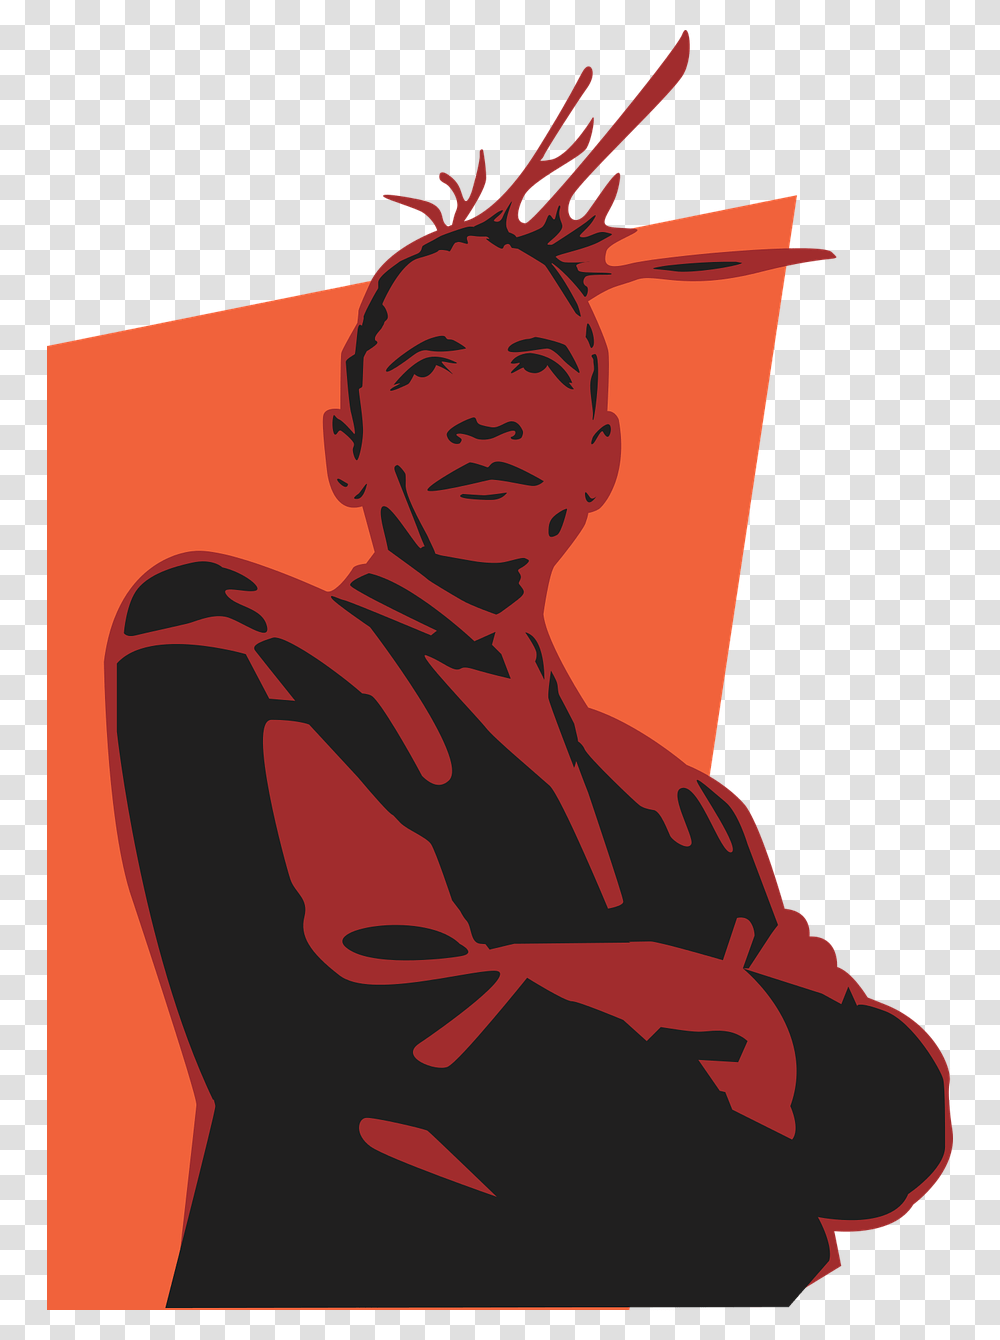 Obama President Funk Hip Hop Style Suit Coat Barack Obama, Person, Human, Logo Transparent Png